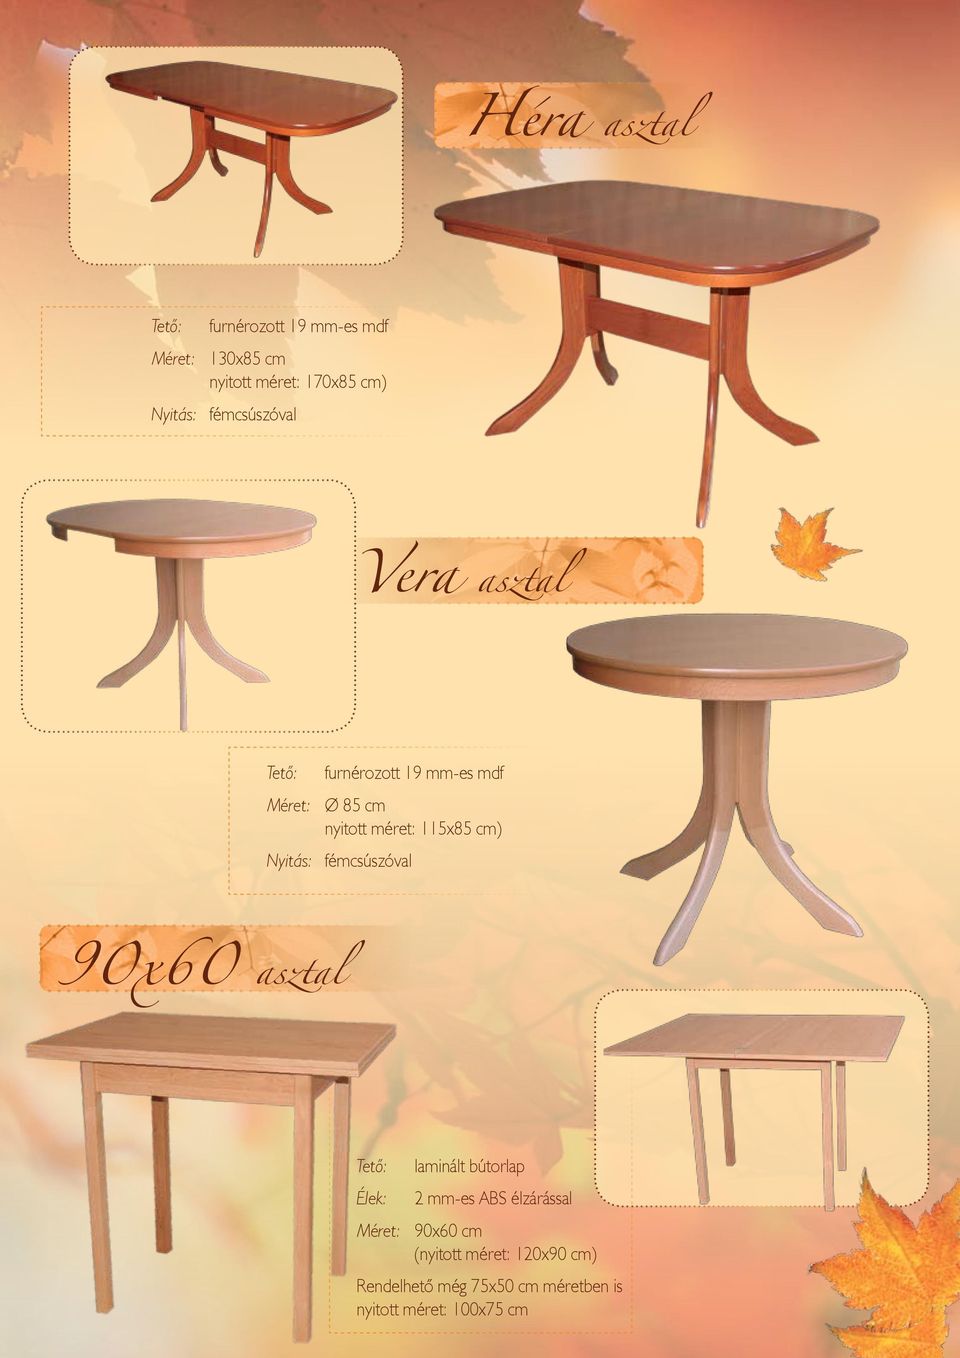 90x60 asztal Élek: laminált bútorlap 2 mm-es ABS élzárással Méret: 90x60 cm